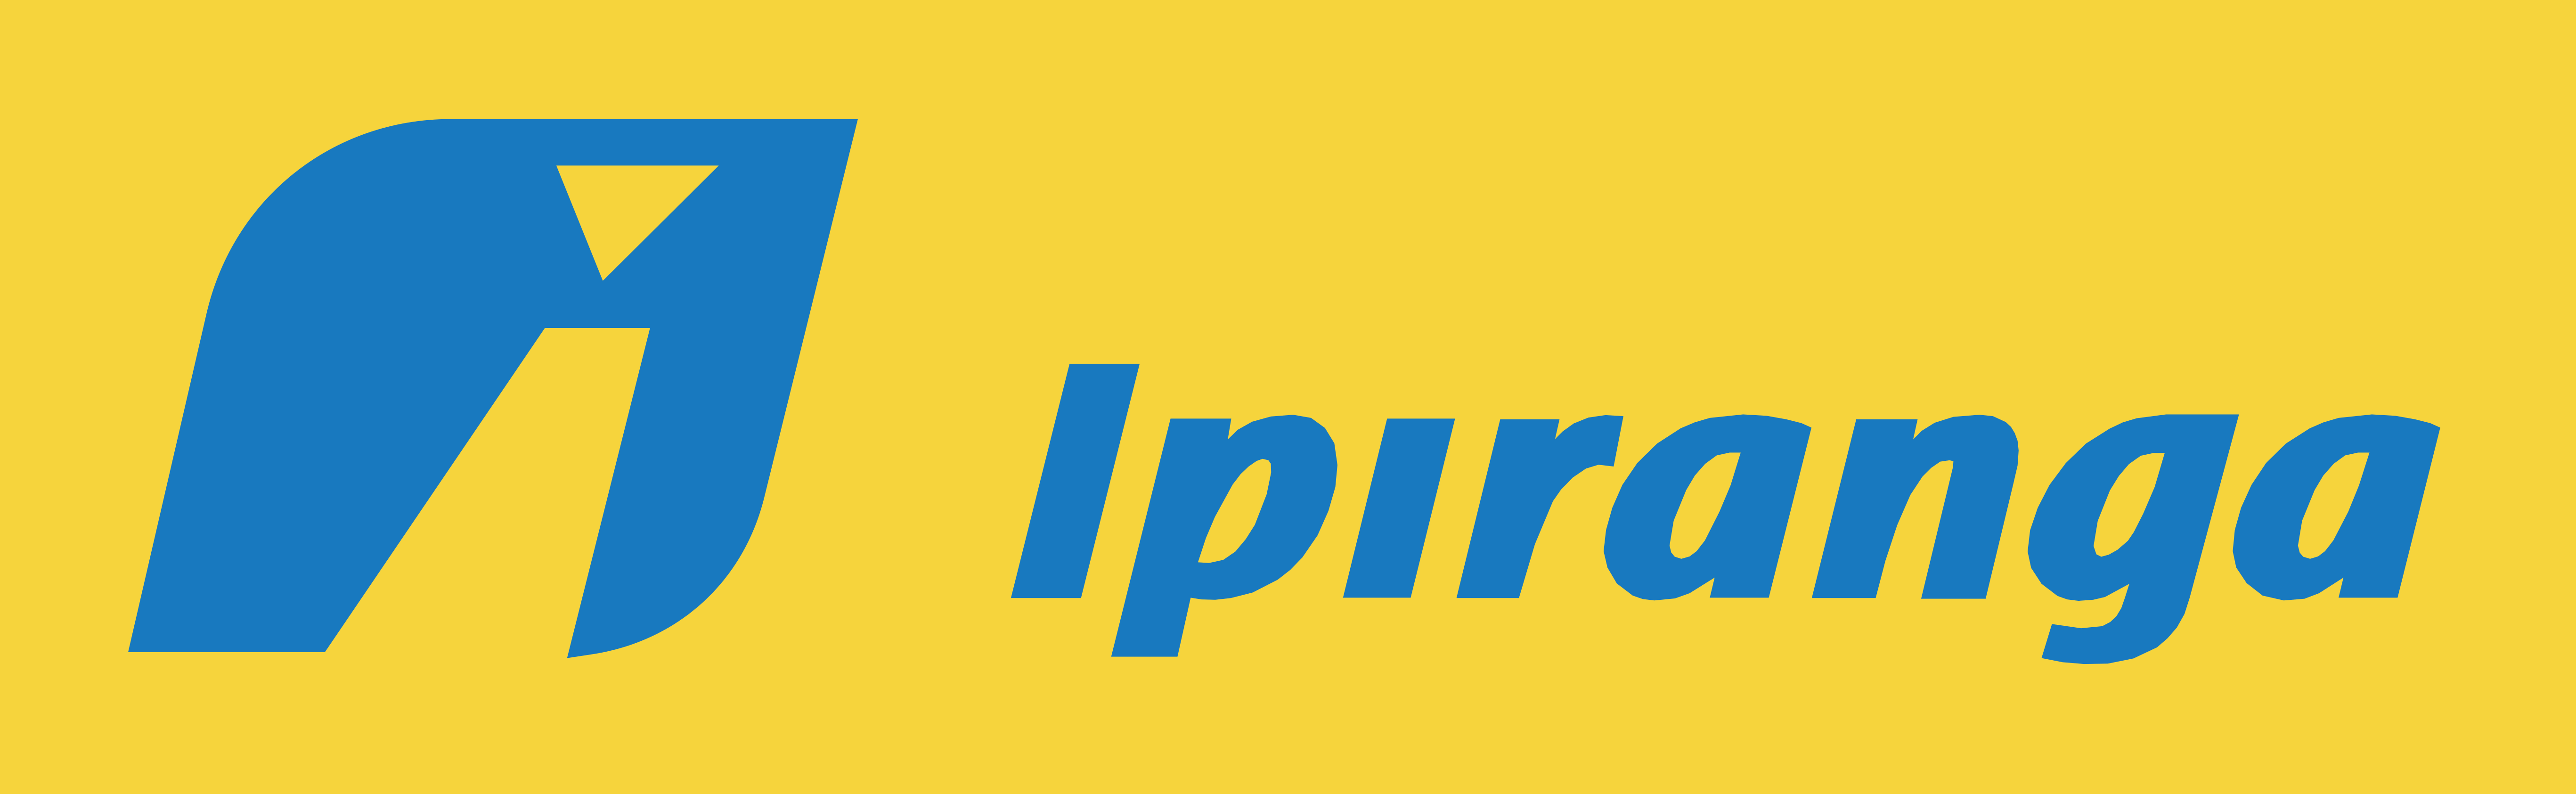 Posto Ipiranga Logo.